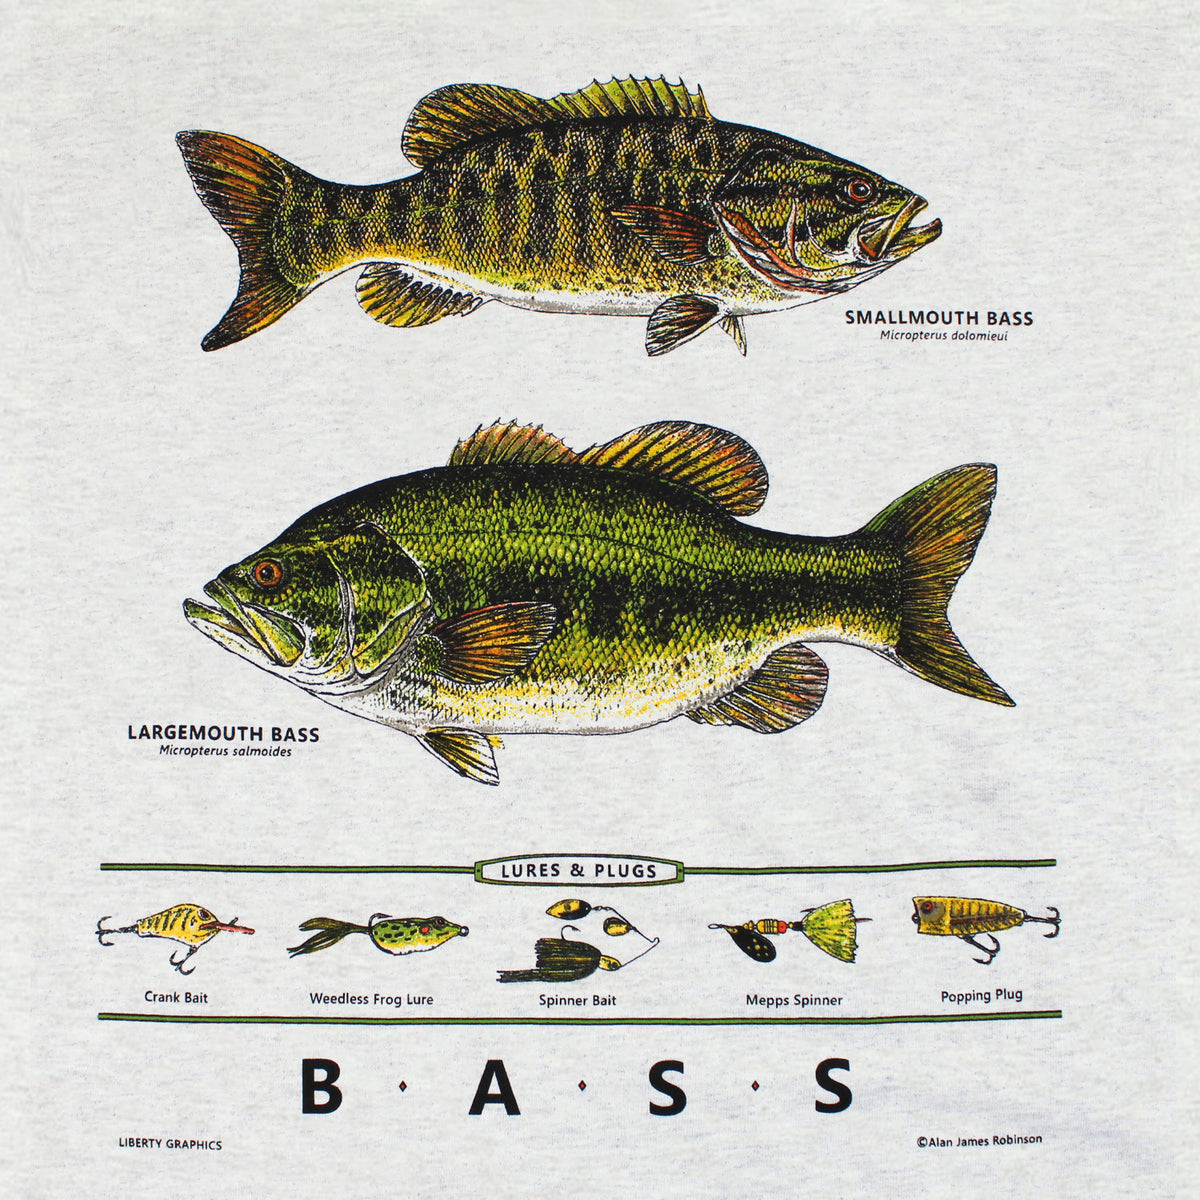 Fishing Largemouth Bass Bait Wait Men's Graphic T Shirt Tees